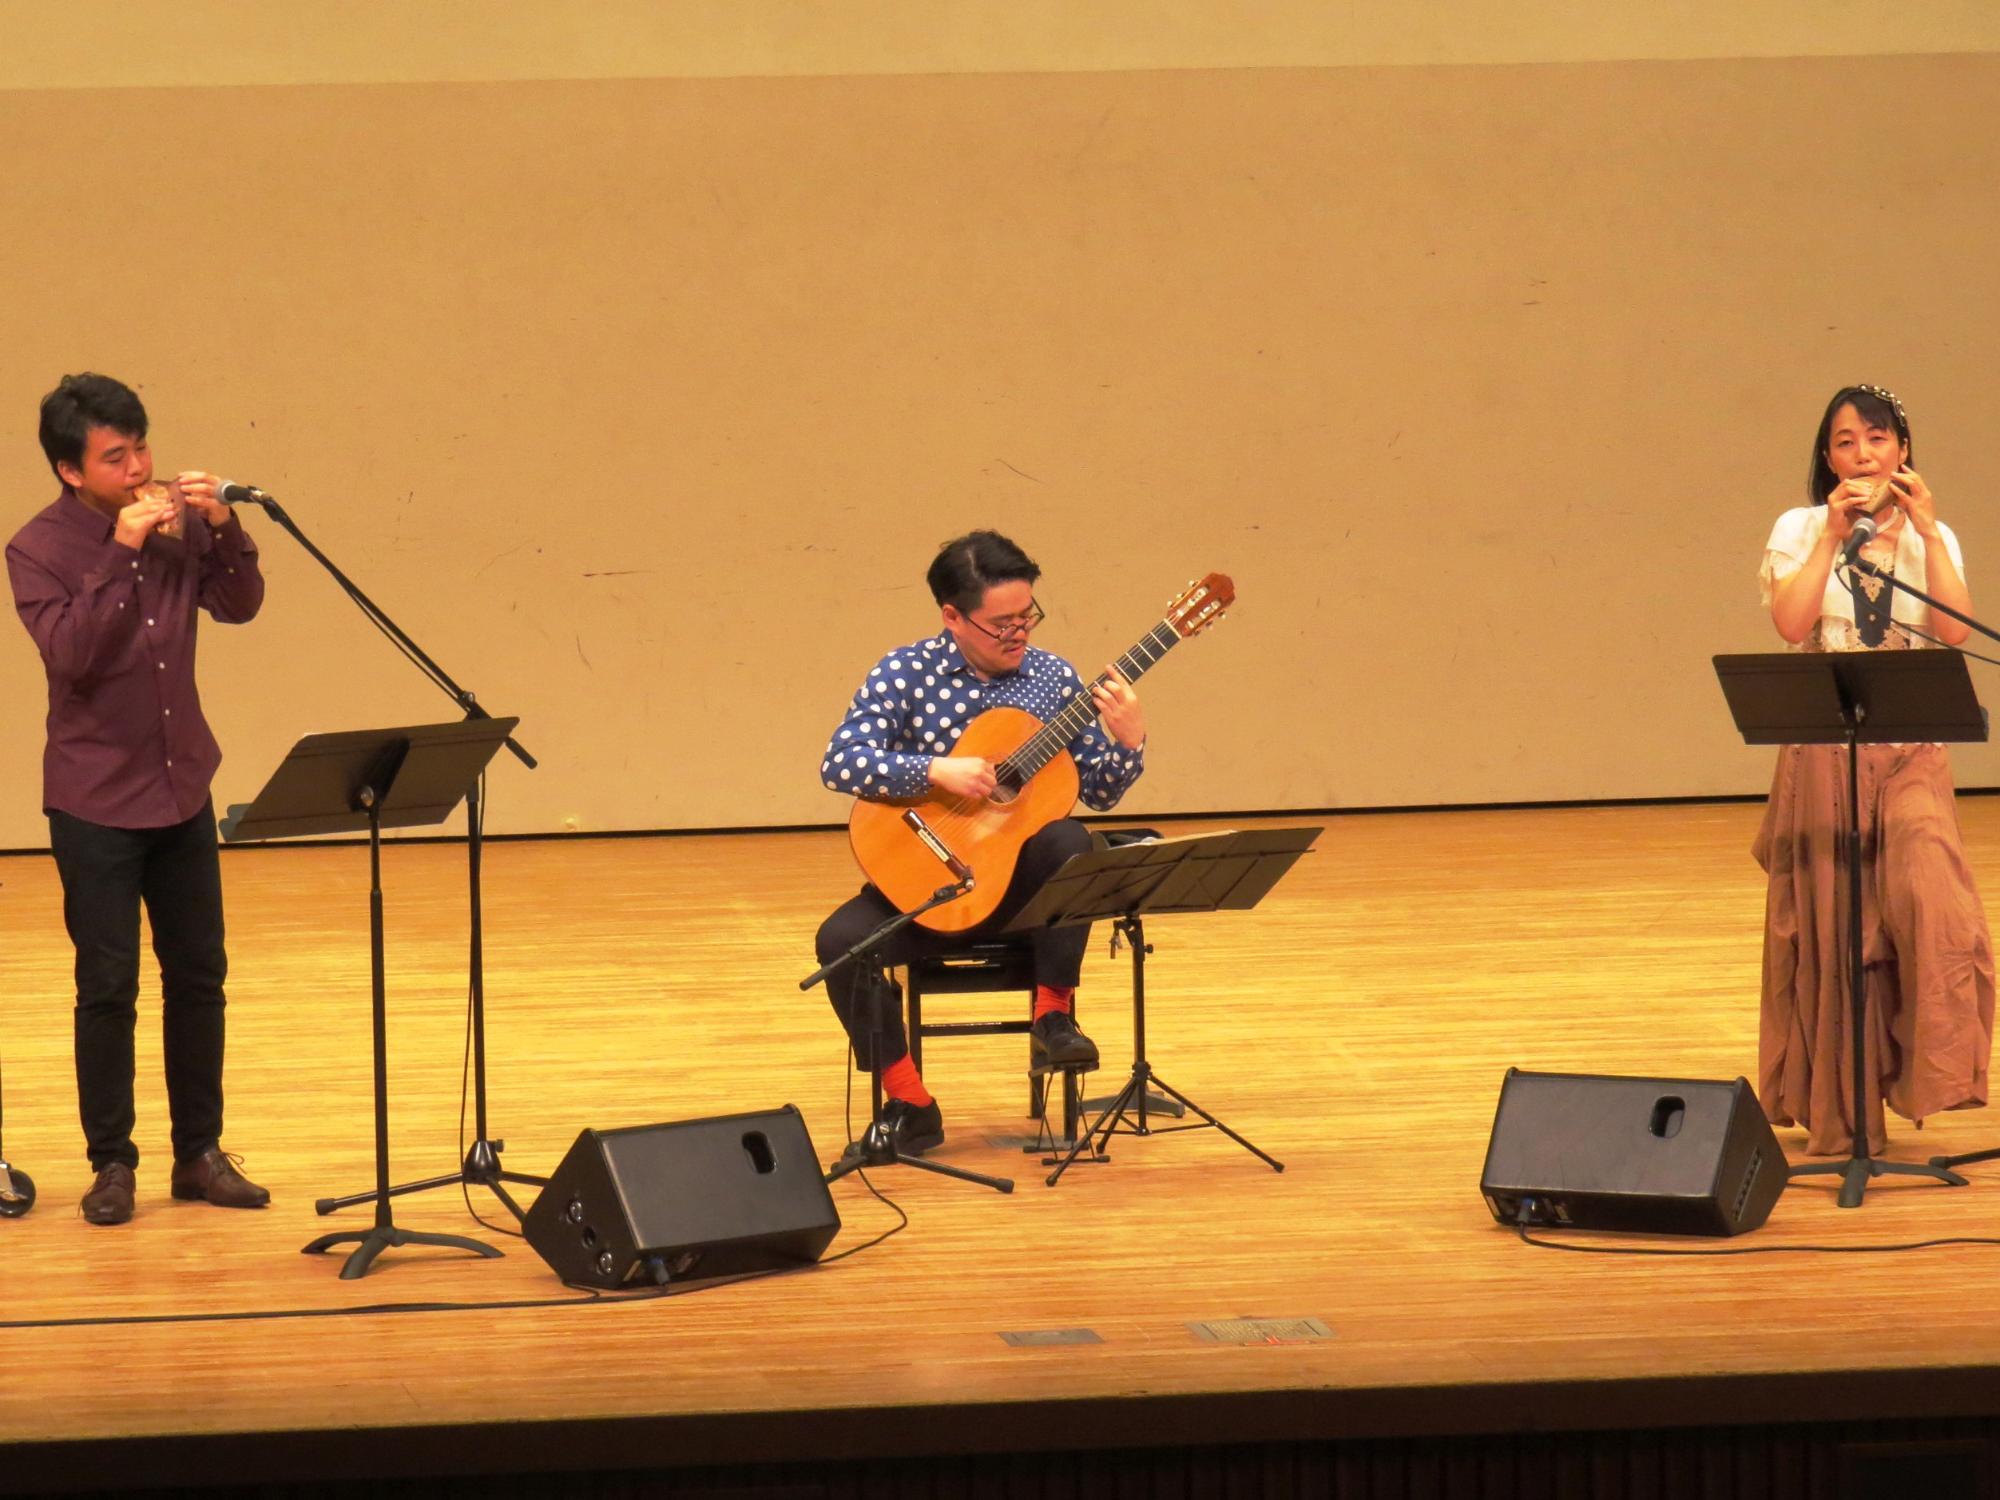 やまさき文化大学音楽鑑賞講座で舞台でオカリナとギターの演奏をしている写真